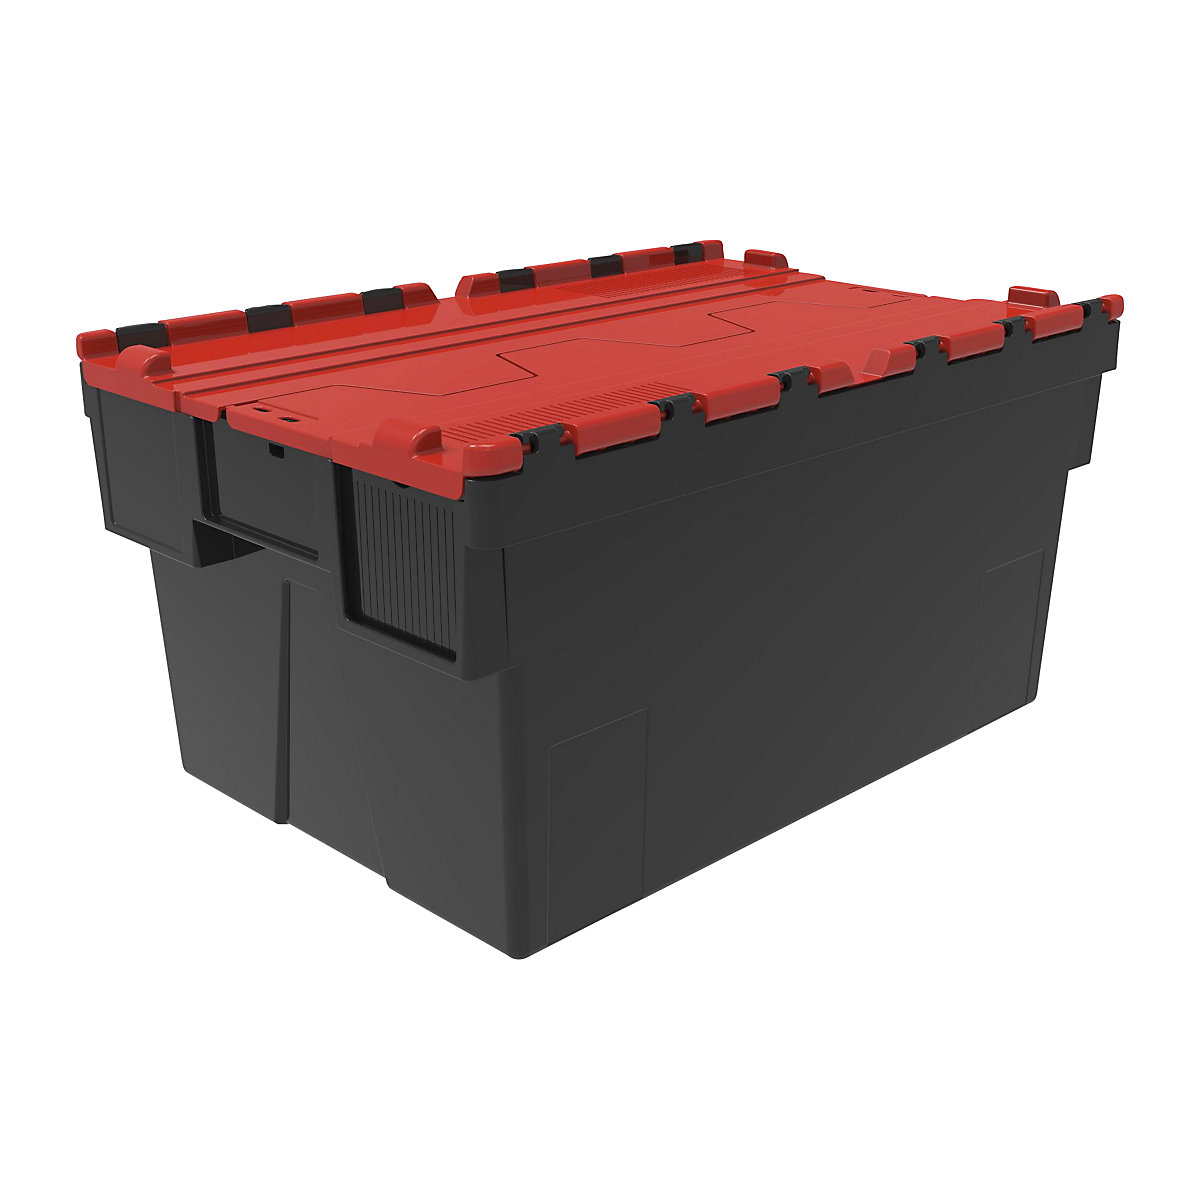 Recipiente empilhável e retornável, CxLxA 600 x 400 x 310 mm, embalagem de 5 unid., preto, tampa vermelha